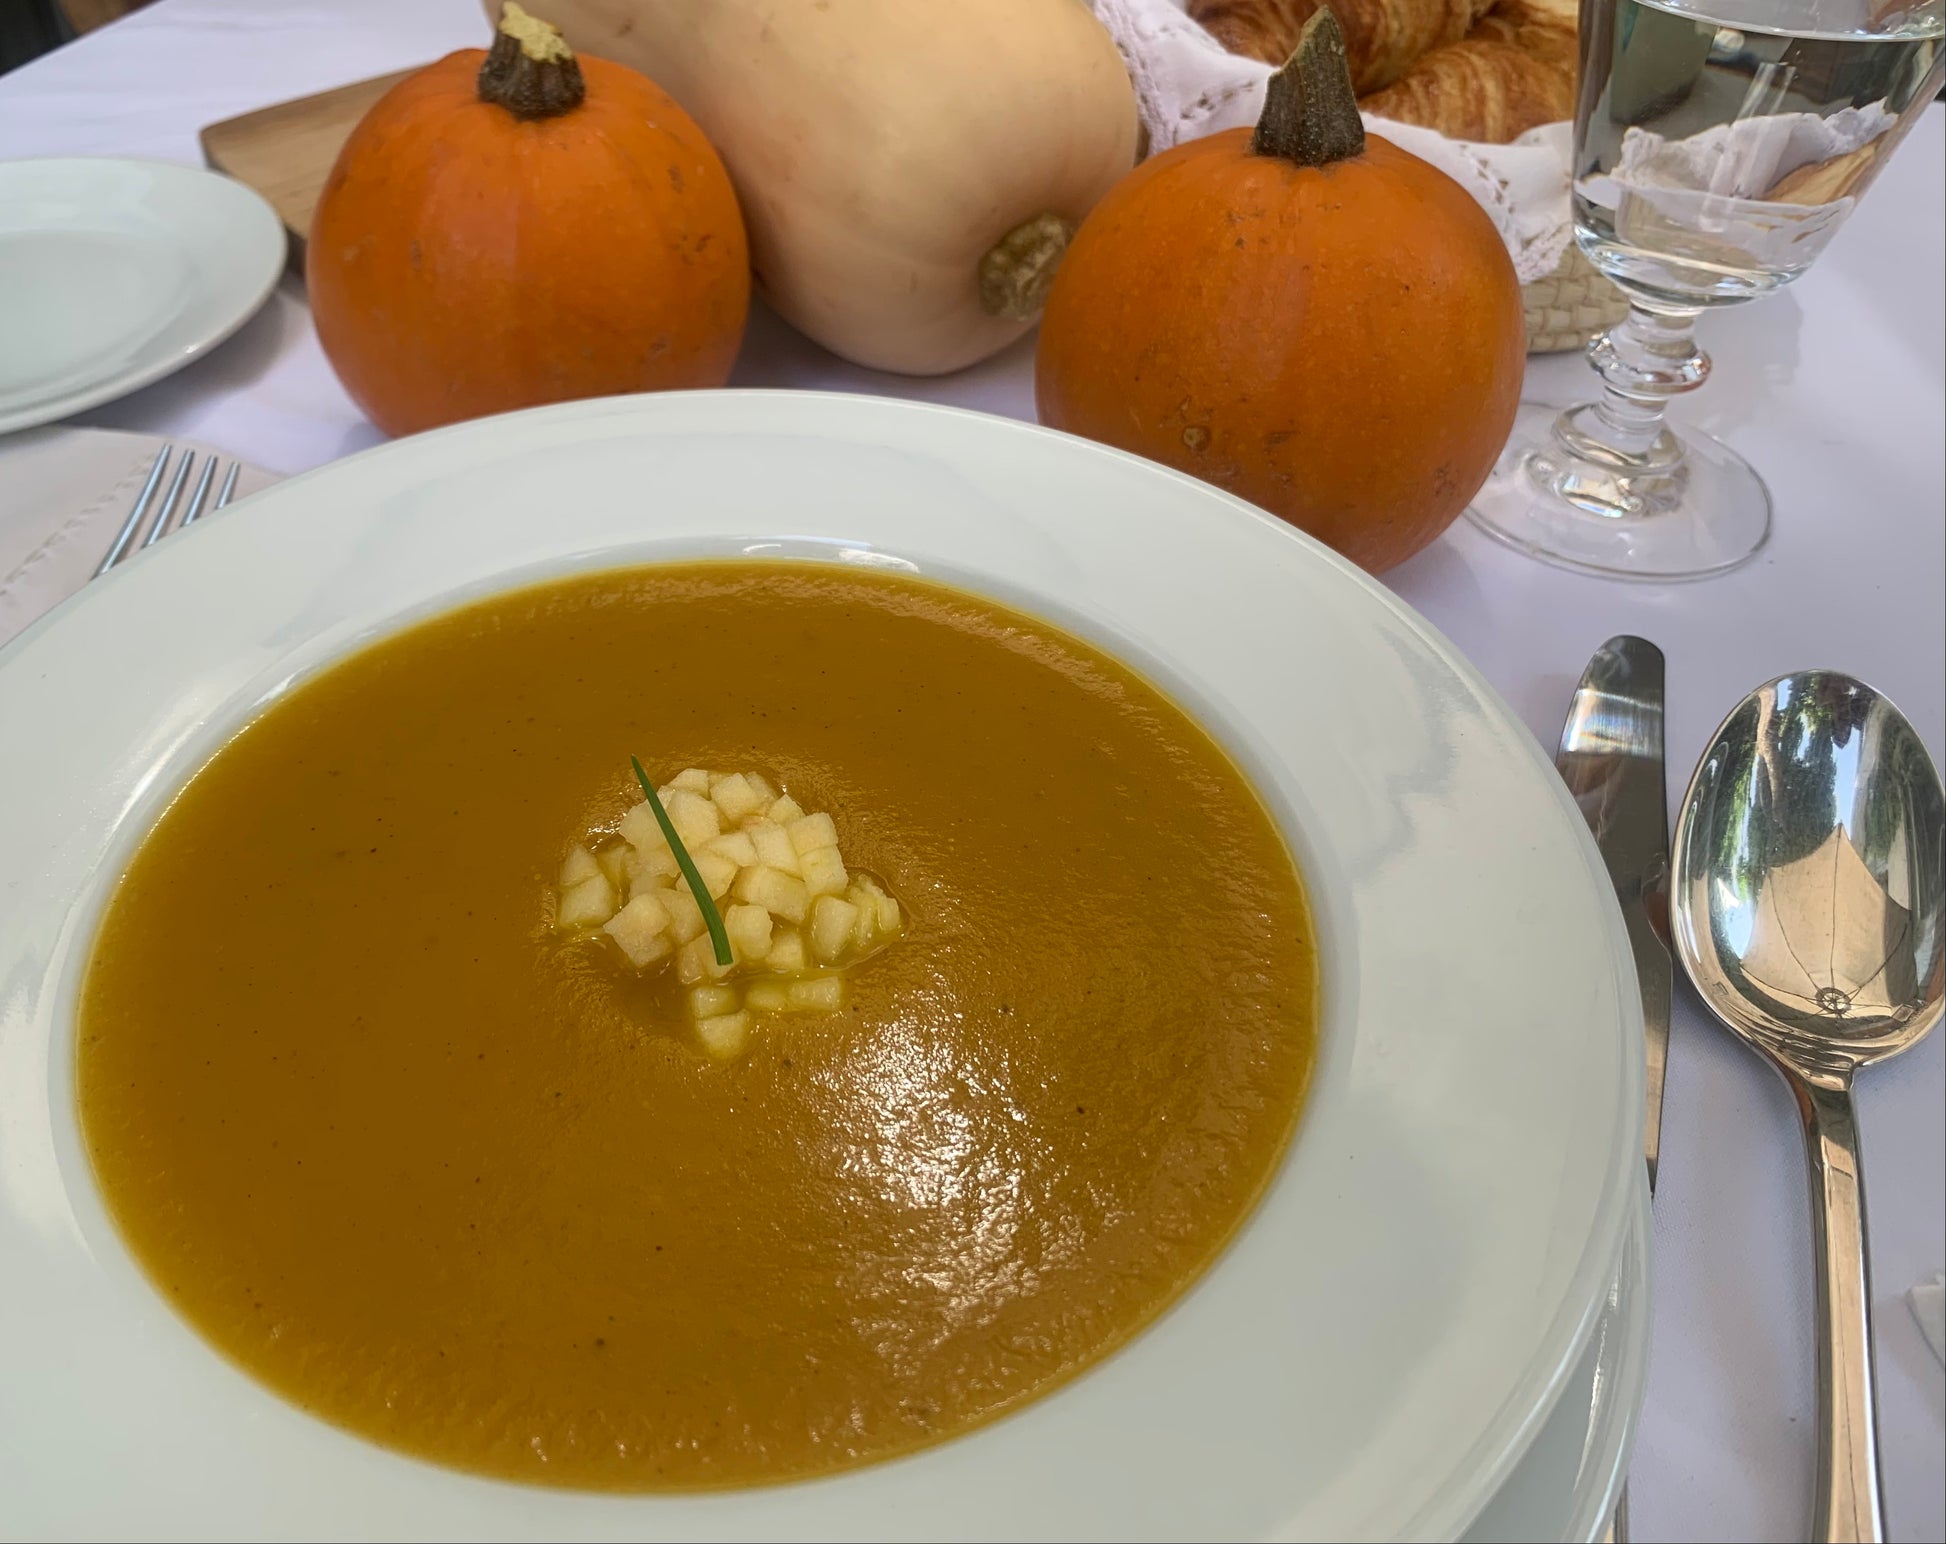 Es una sopa perfecta para días de otoño, su consistencia es aterciopelada, la calabaza mantequilla se junta en esta sopa con manzana y un ligero toque de curry. Se vende por litro, cada litro es para 3 a 4 personas.